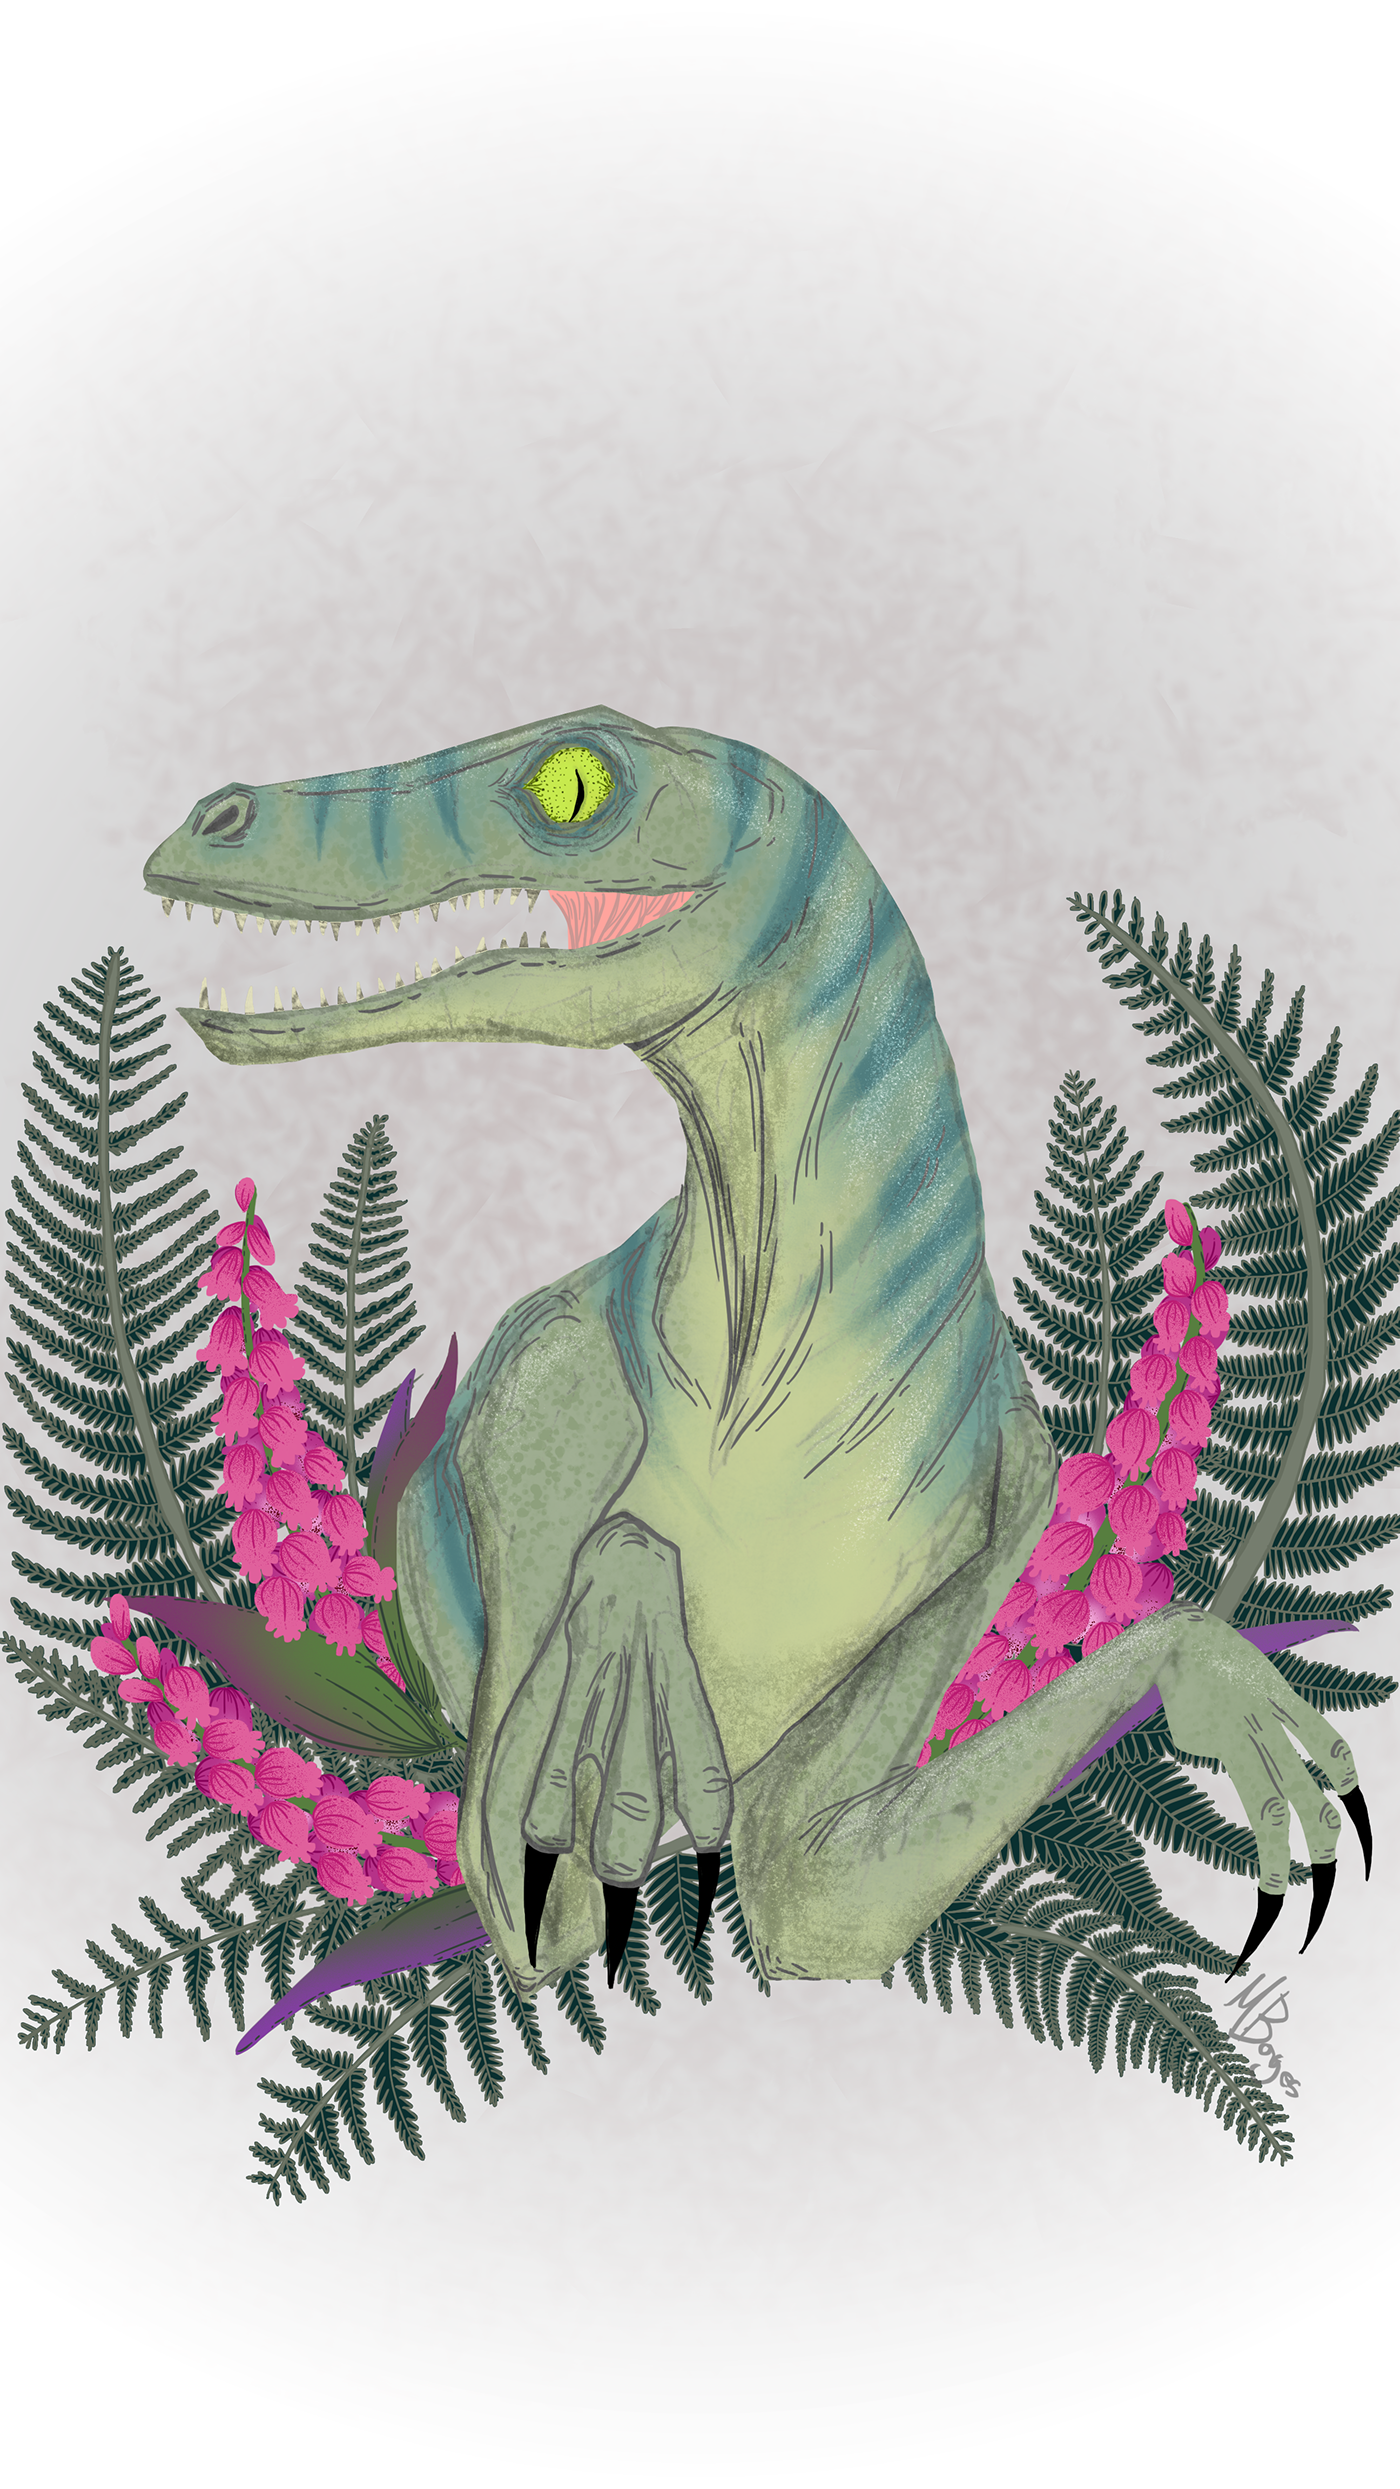 clever girl velociraptor Dinosaur Flowers mariana borges m garageland